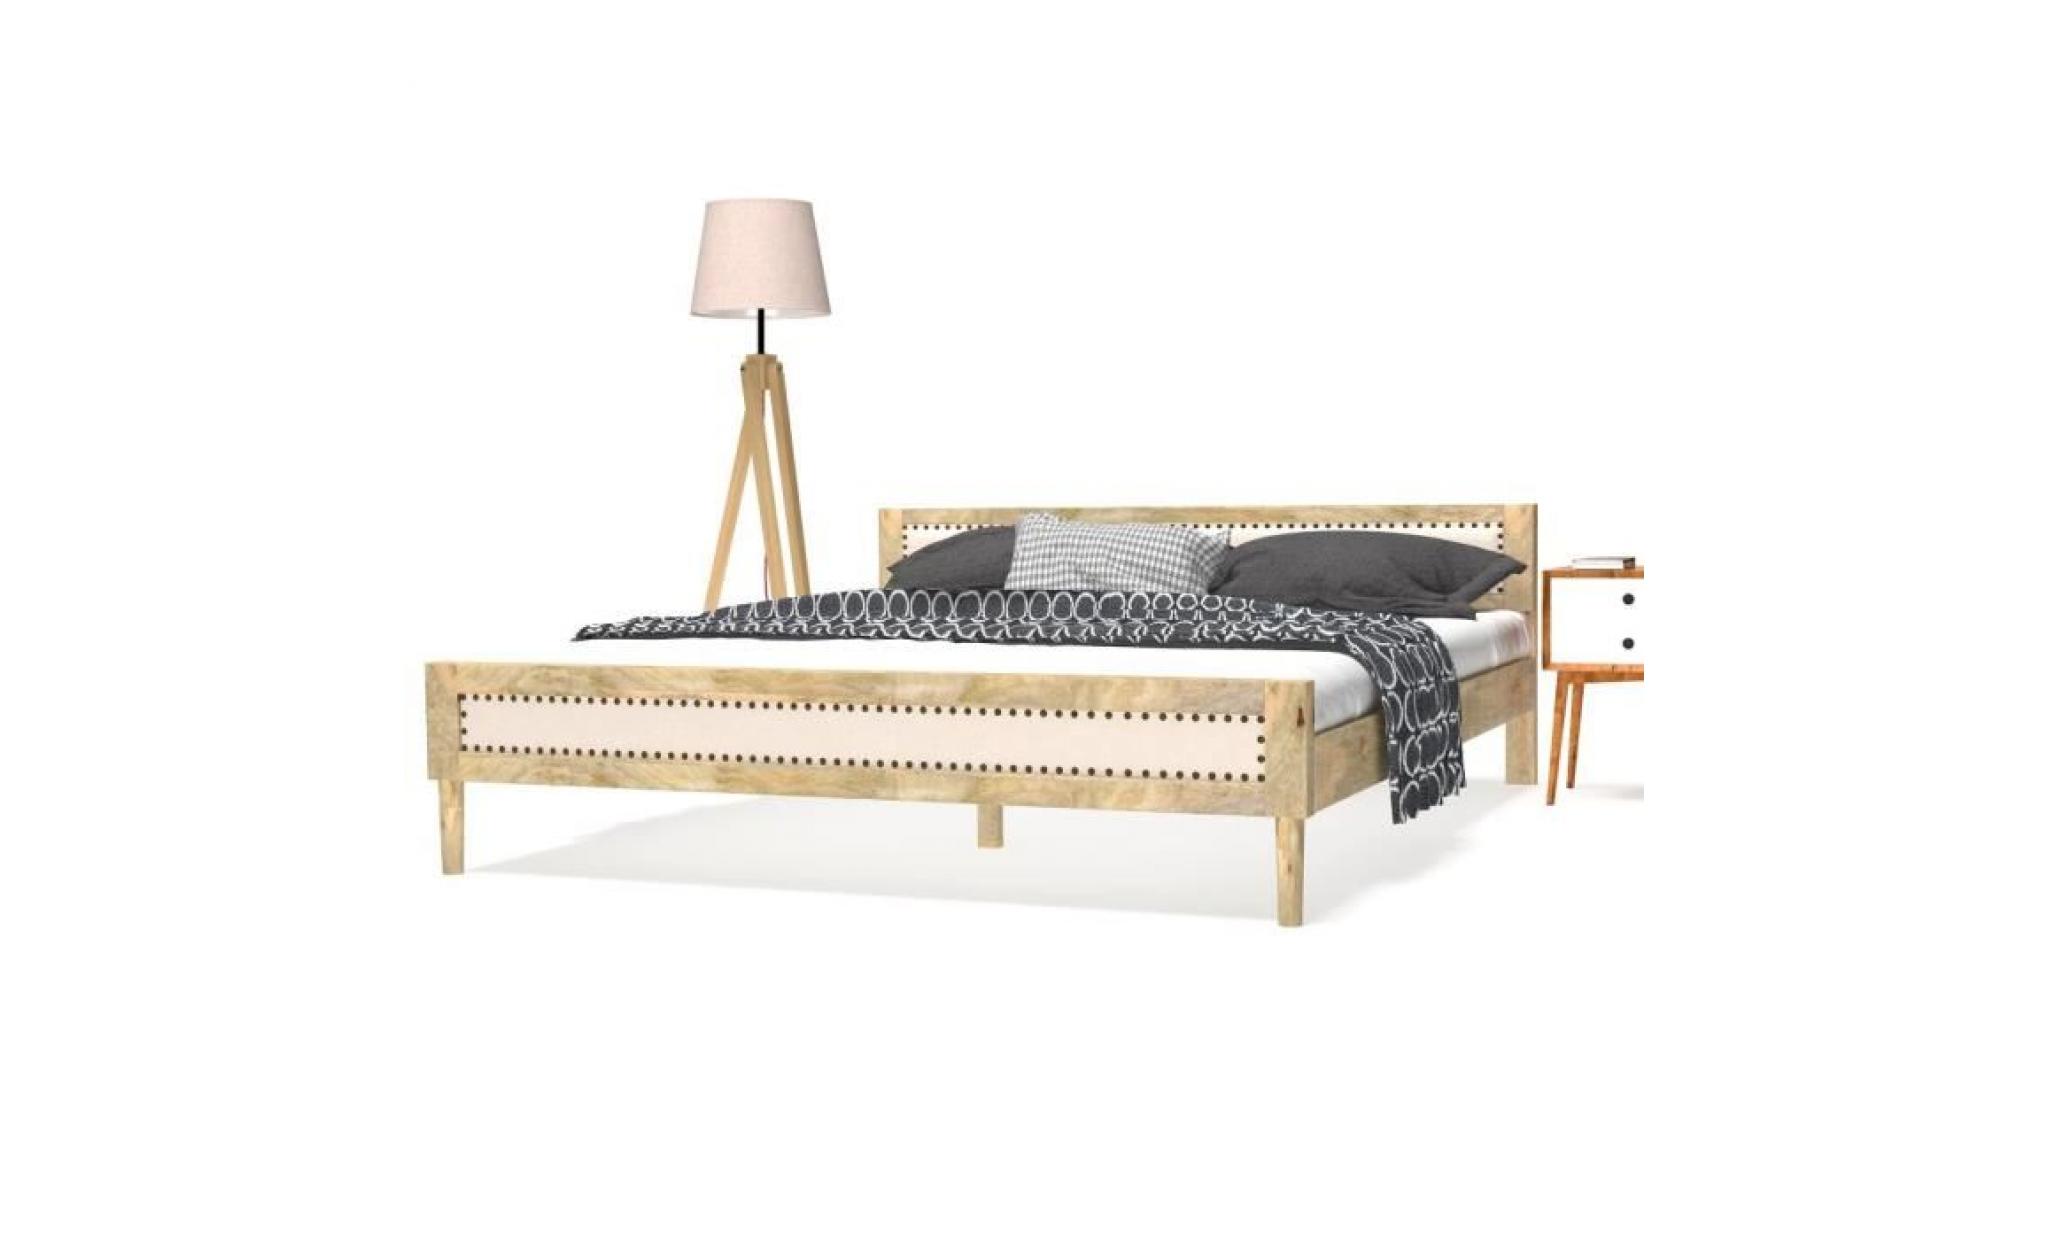 cadre de lit adulte contemporain cadre de structure métallique meuble élégant pour dortoir chambre à coucher 216 x 162,5 marron 160